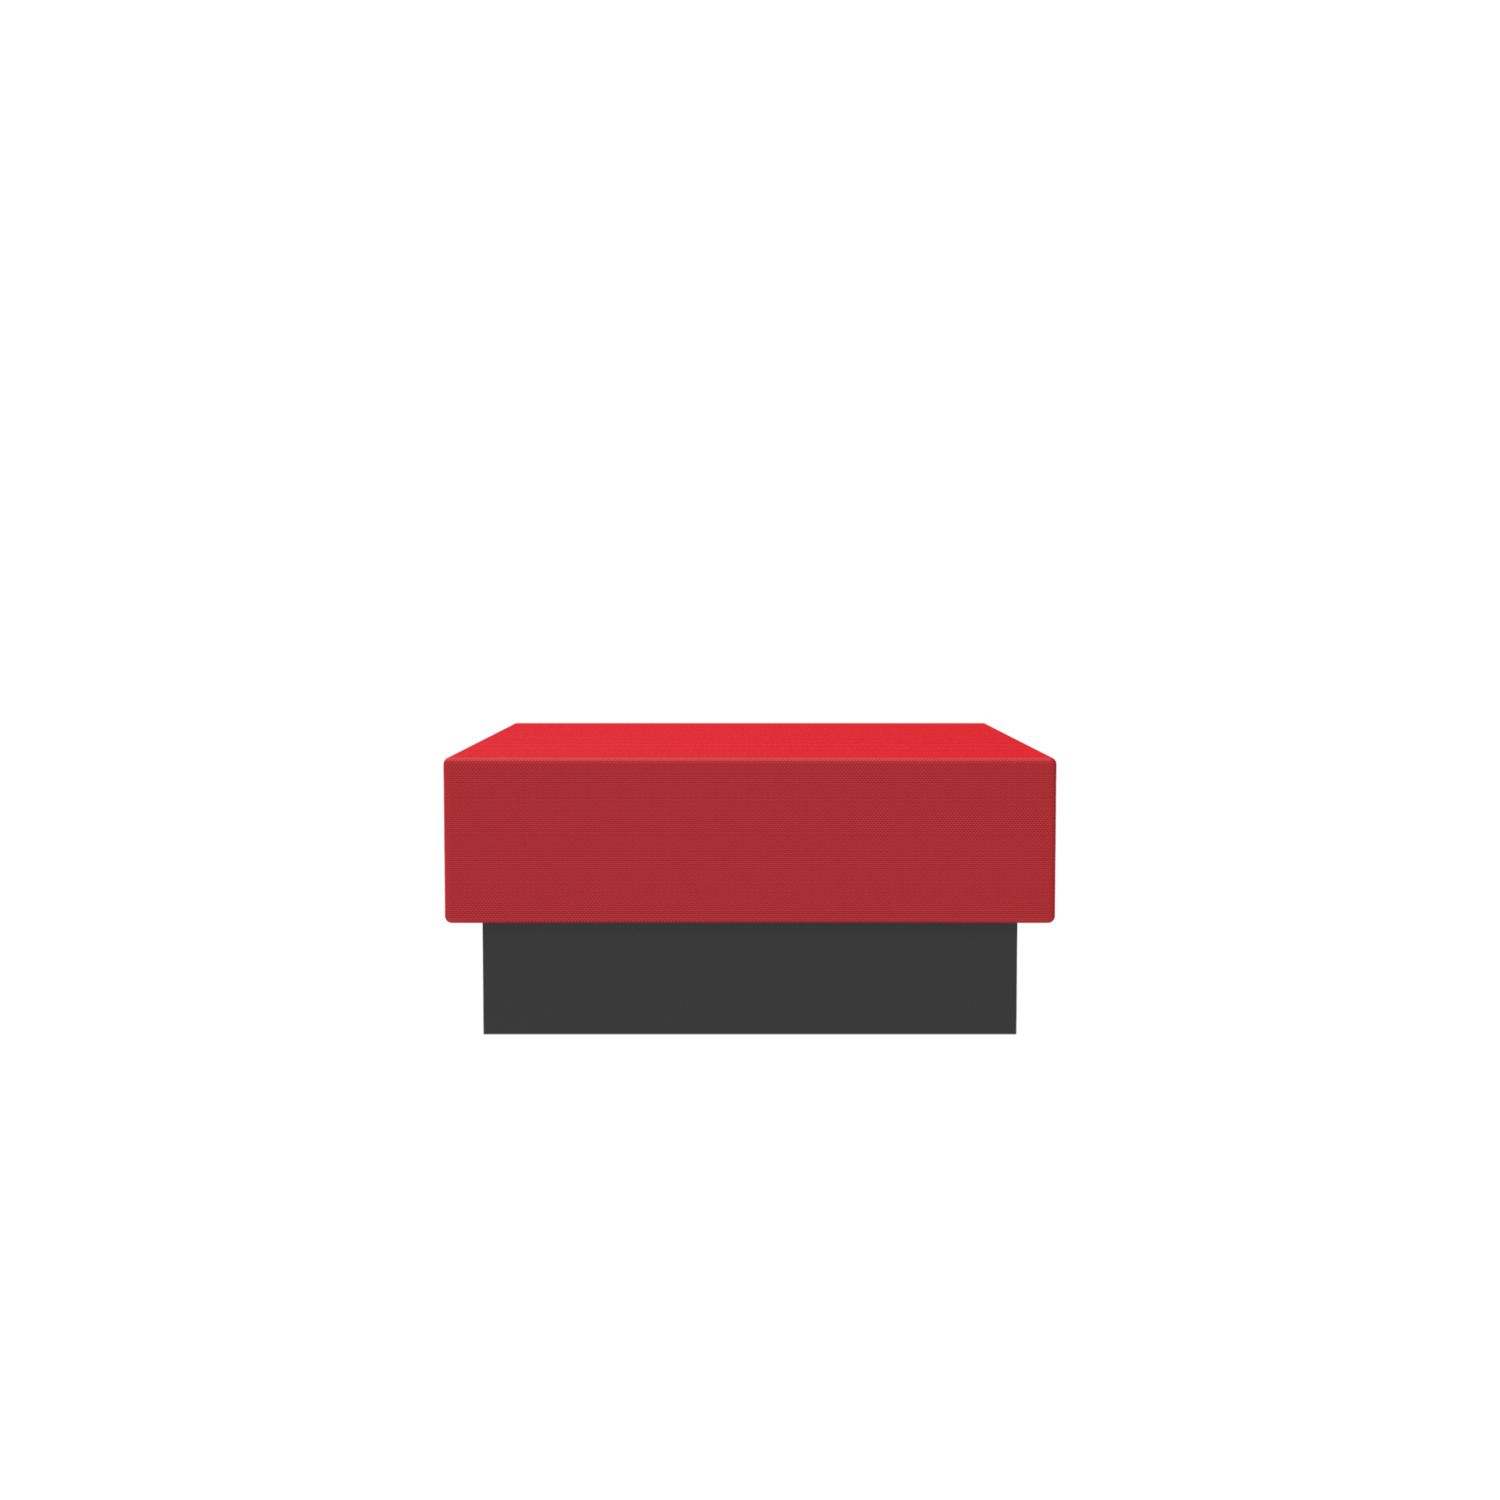 lensvelt oma blocks lounging edition closed base without backrest 90 cm width grenada red 010 black ral9005 hard leg ends